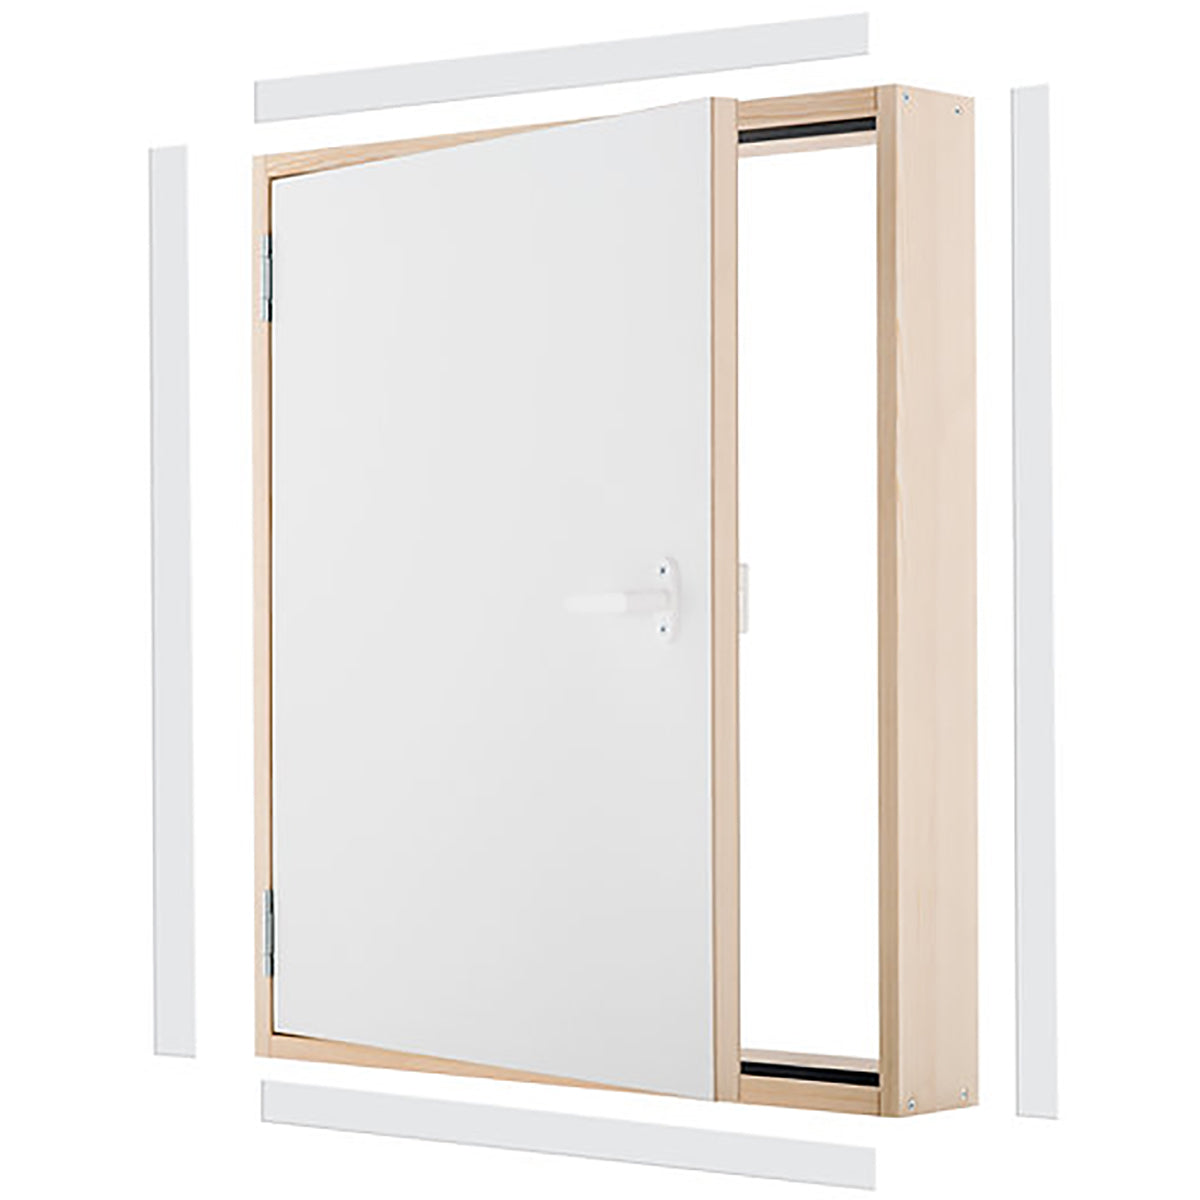 DK TERMO - Wooden Insulated Access Door Panel - 31.5 in. x 21.6 in.